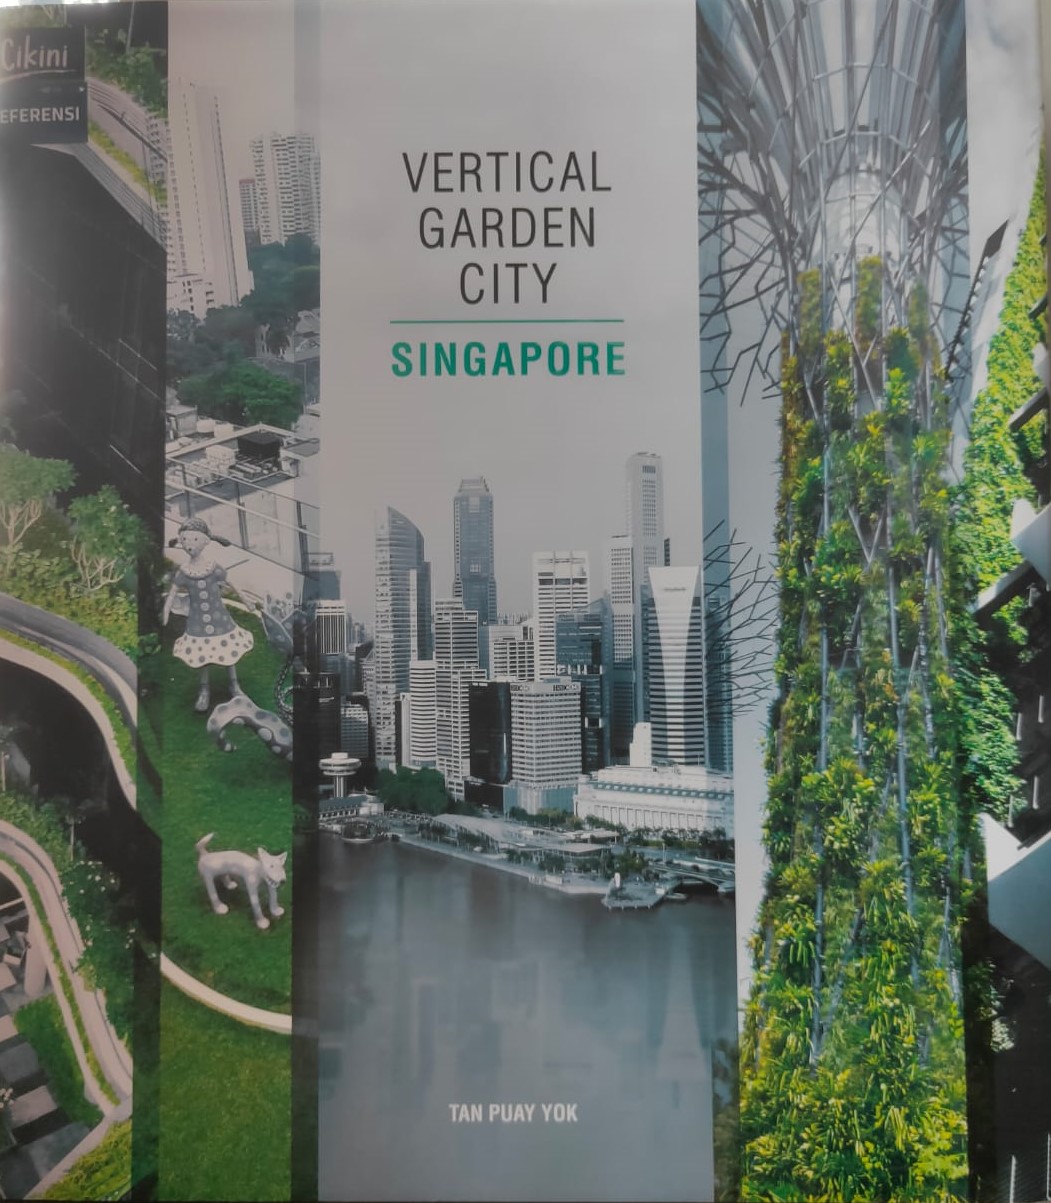 Vertical garden city :  Singapore